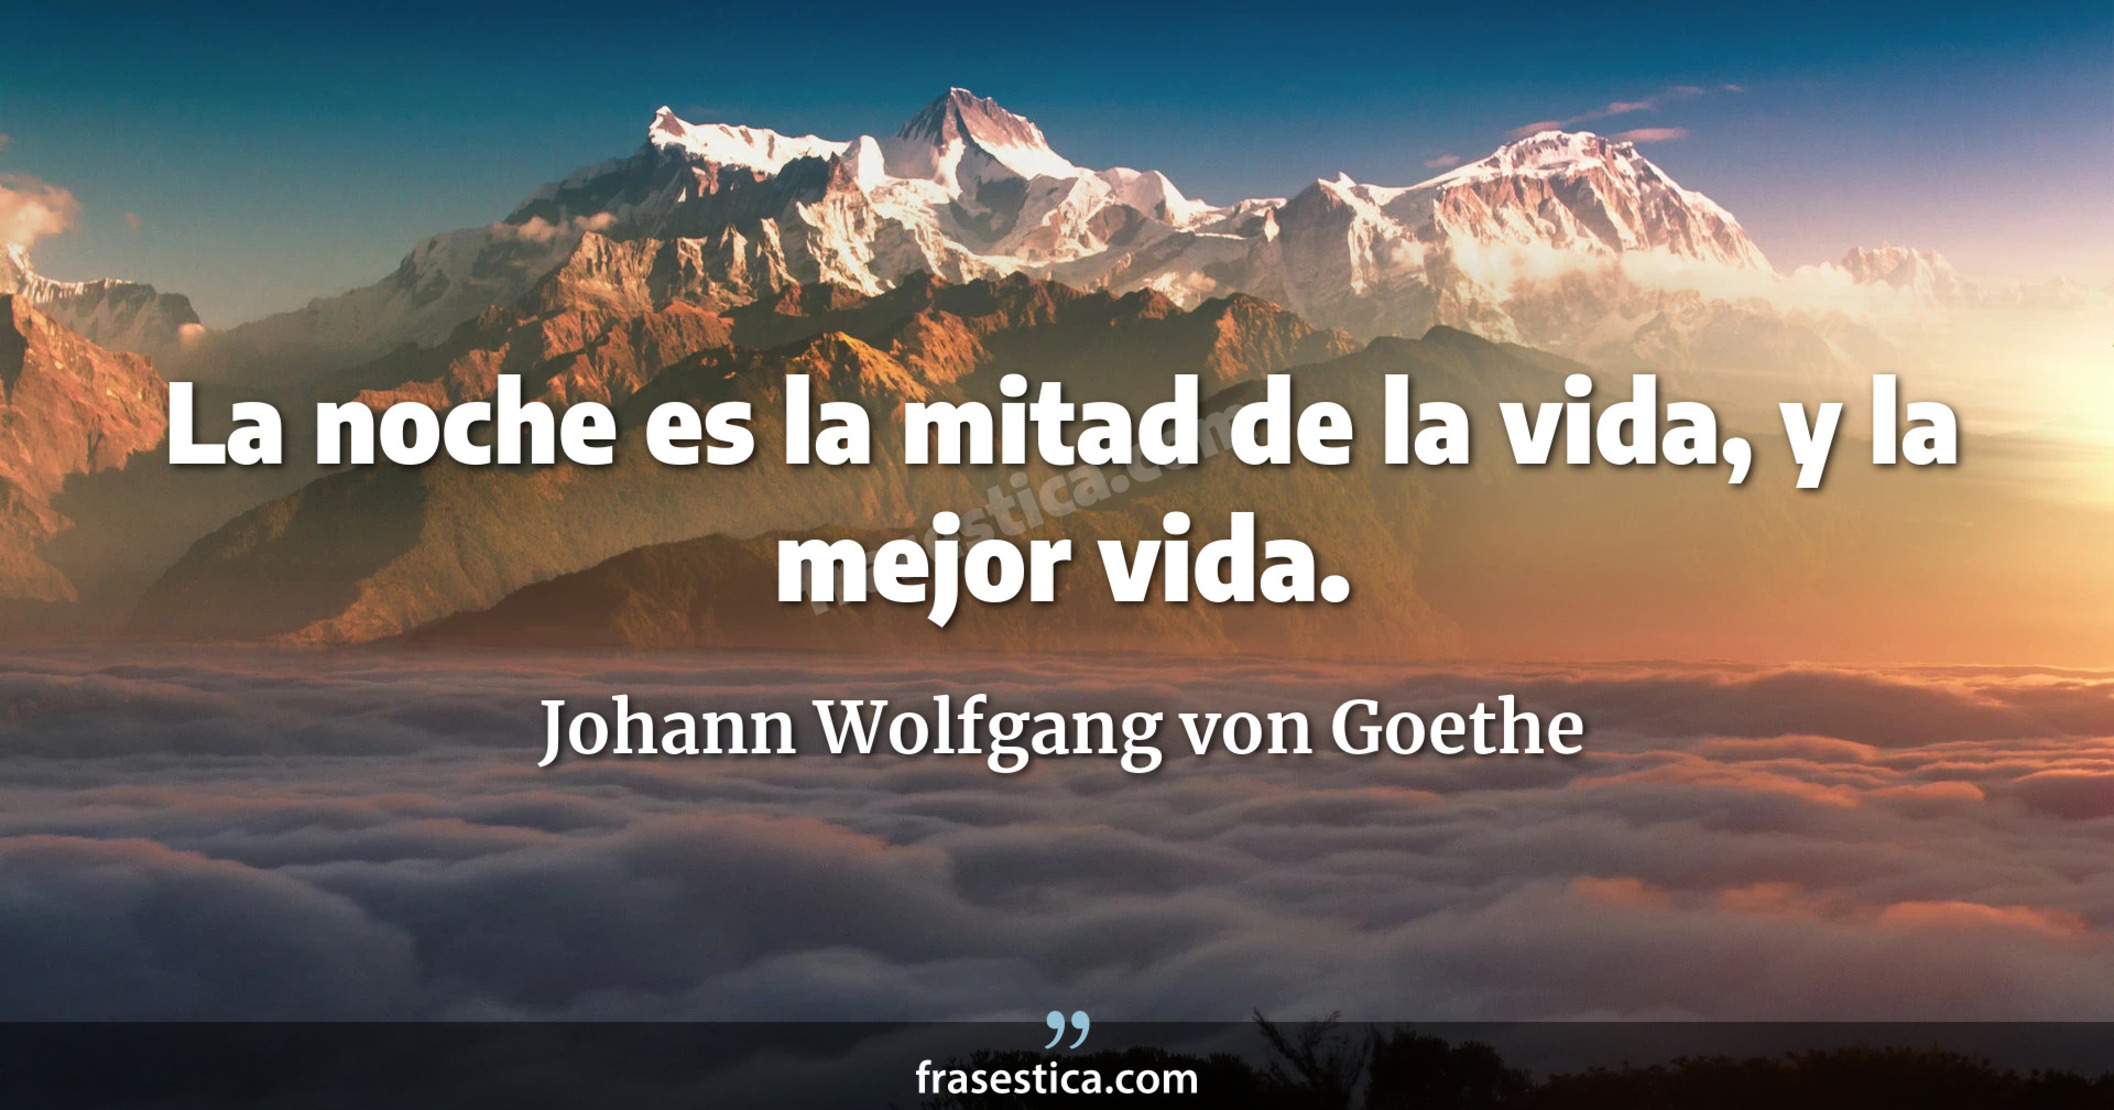 La noche es la mitad de la vida, y la mejor vida. - Johann Wolfgang von Goethe